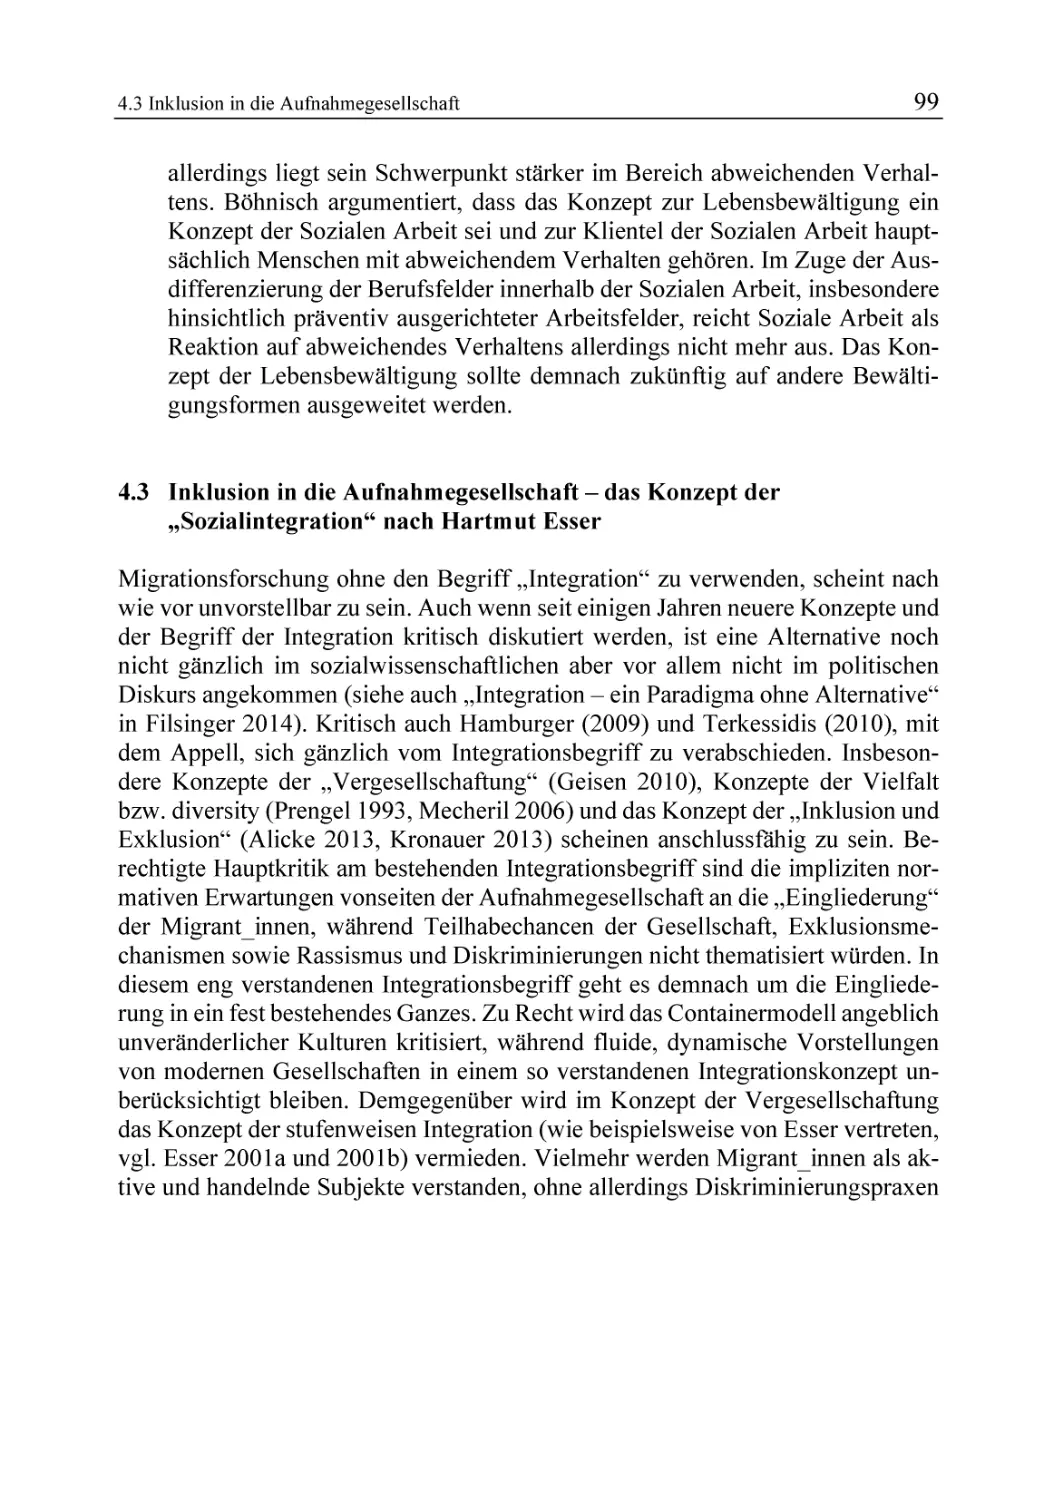 4.3 Inklusion in die Aufnahmegesellschaft – das Konzept der „Sozialintegration“ nach Hartmut Esser